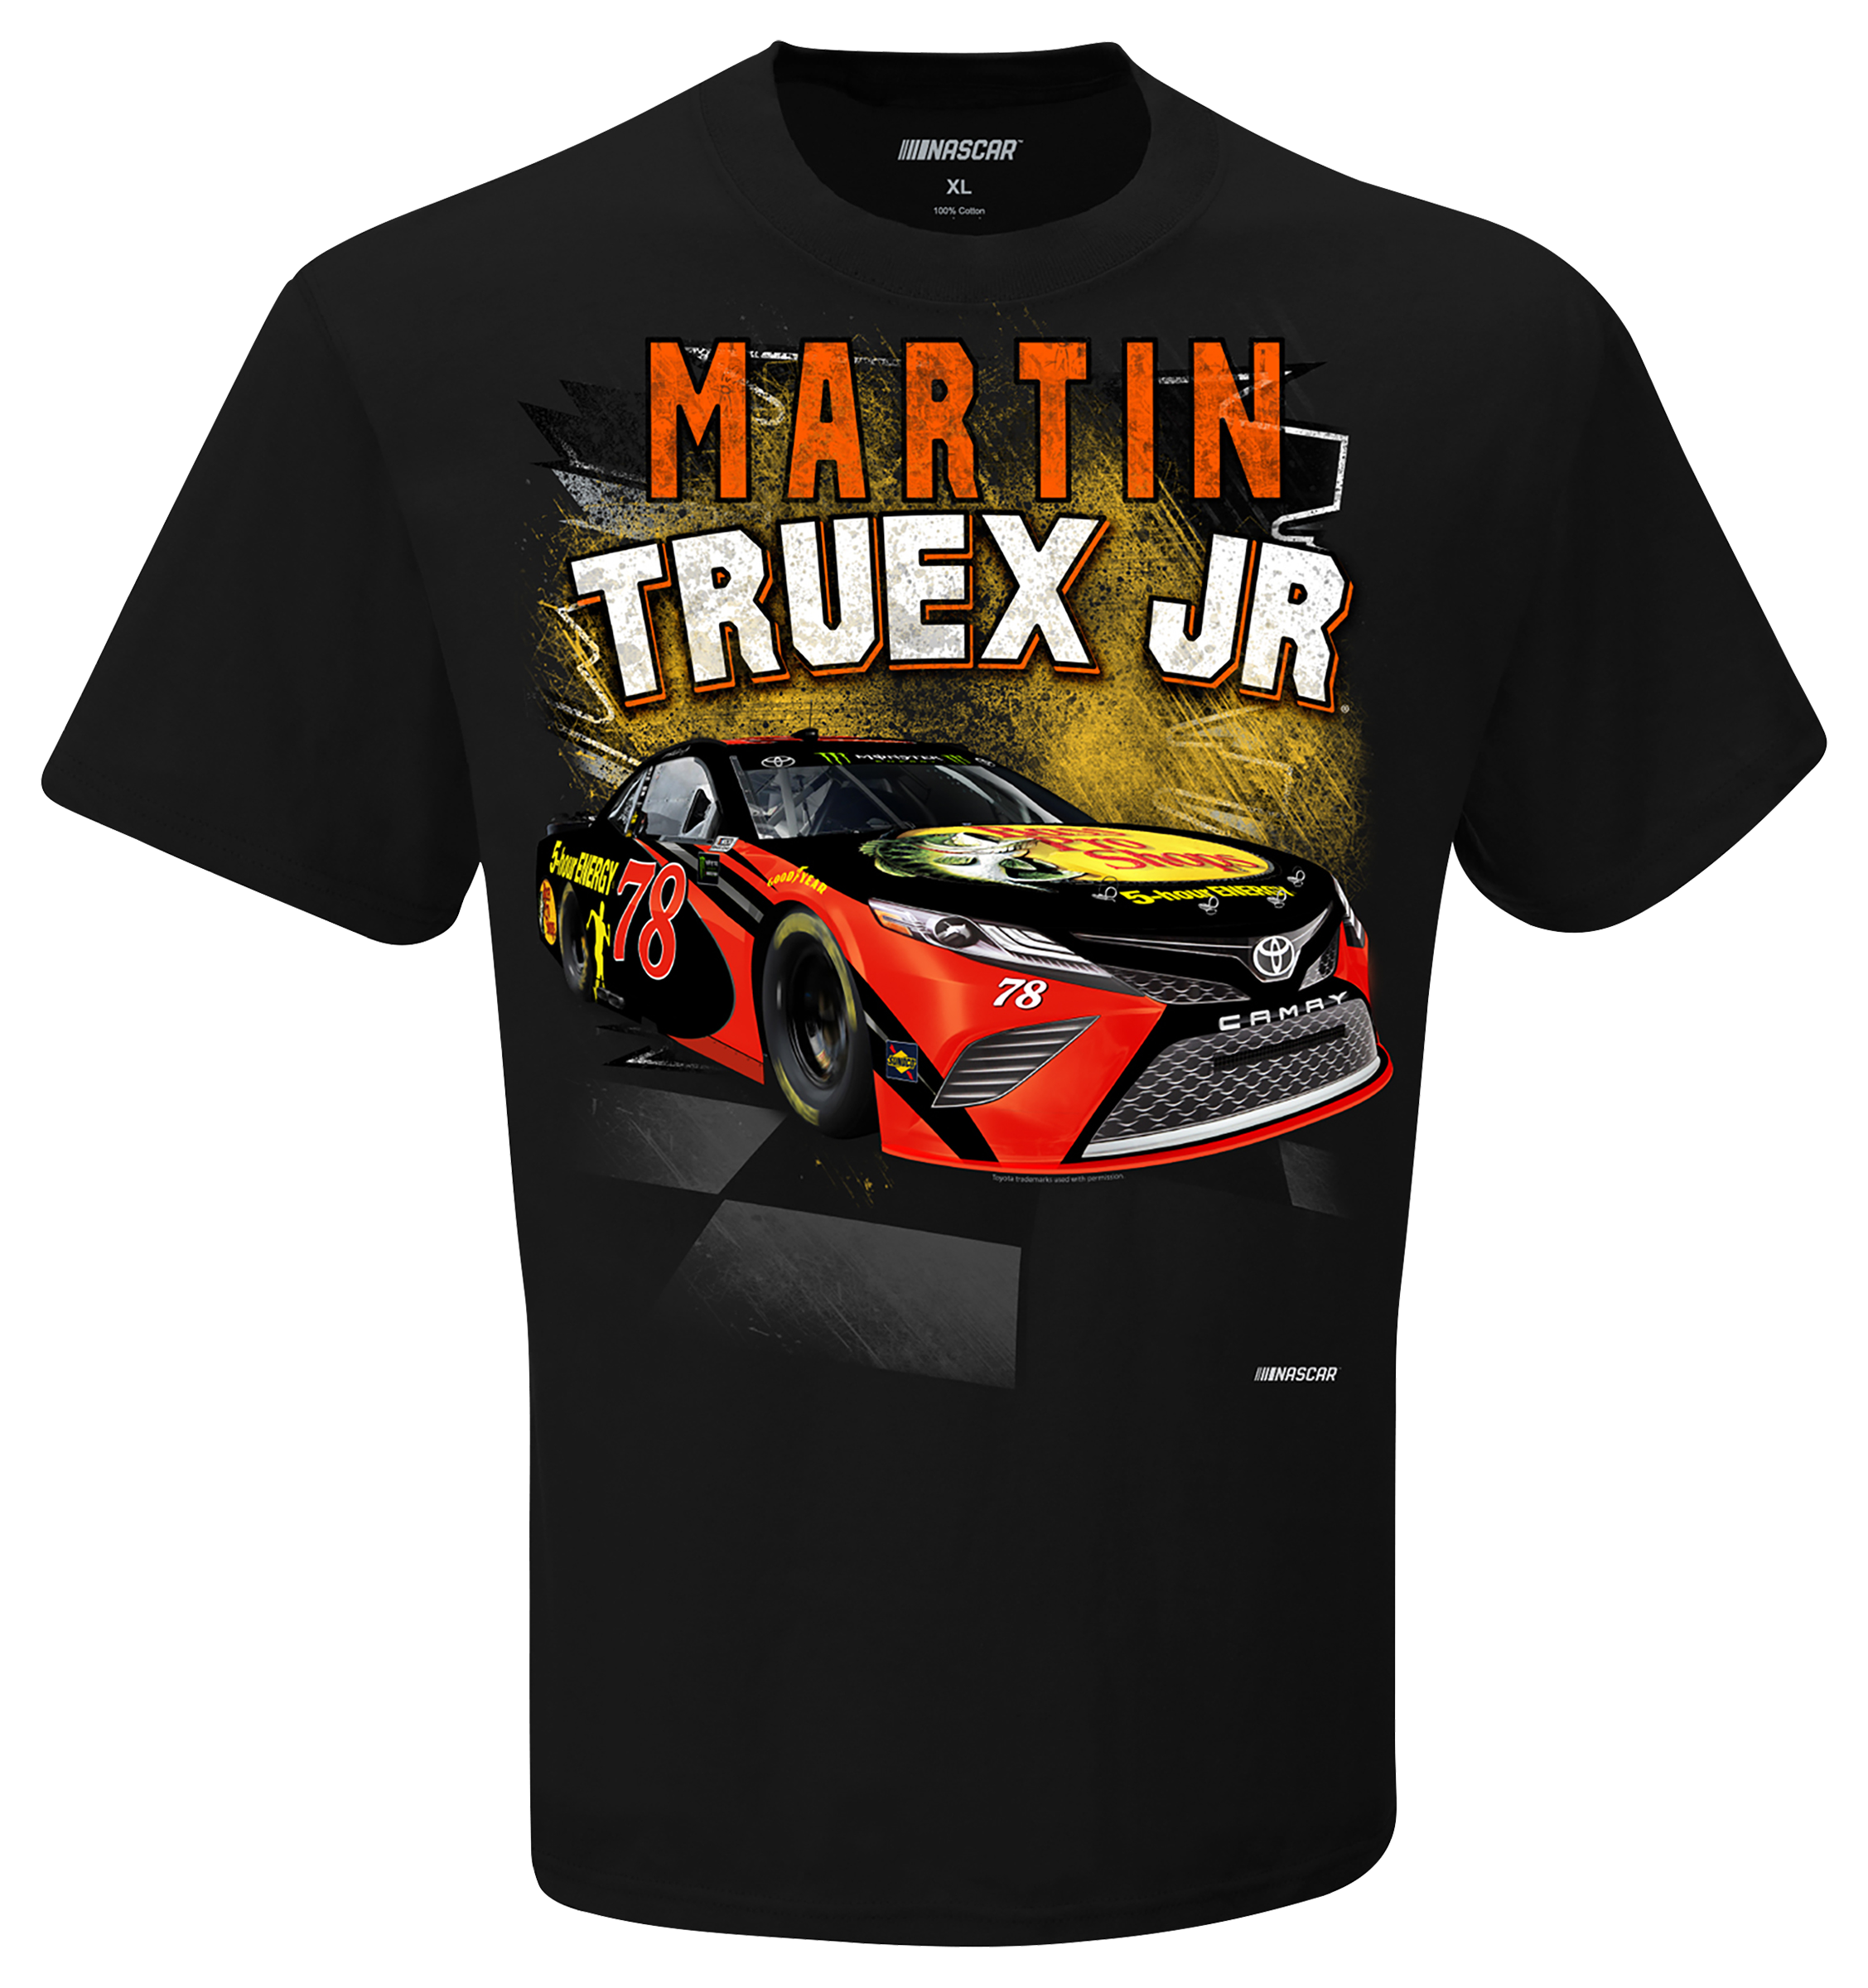 Bass Pro Shops NASCAR Martin Truex Jr. Rifle Short-Sleeve T-Shirt for Men